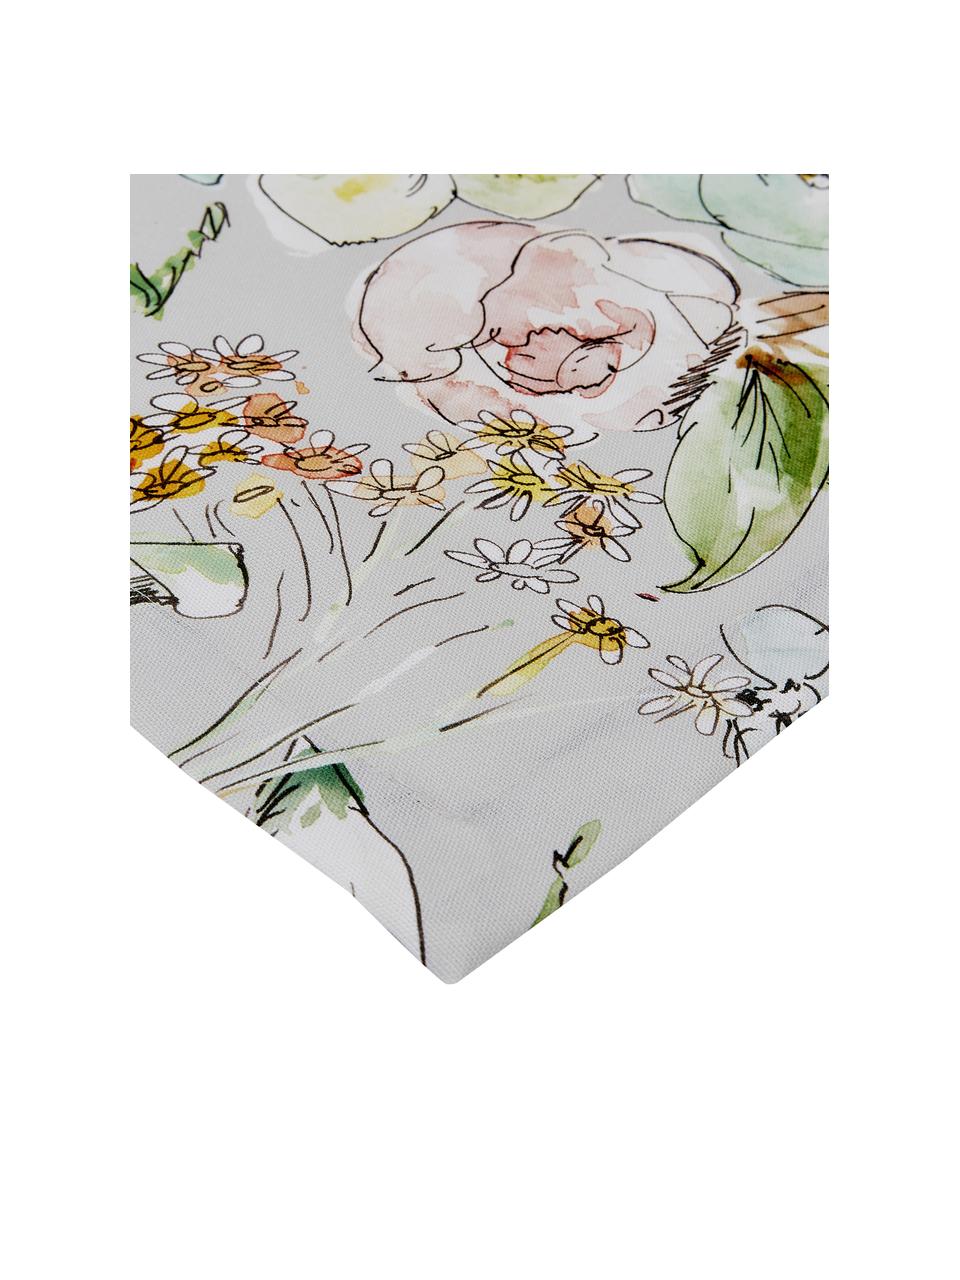 Baumwoll-Tischdecke Angelina mit Blumenmotiv, 100% Baumwolle, Mehrfarbig, Für 4 - 6 Personen (B 130 x L 170 cm)